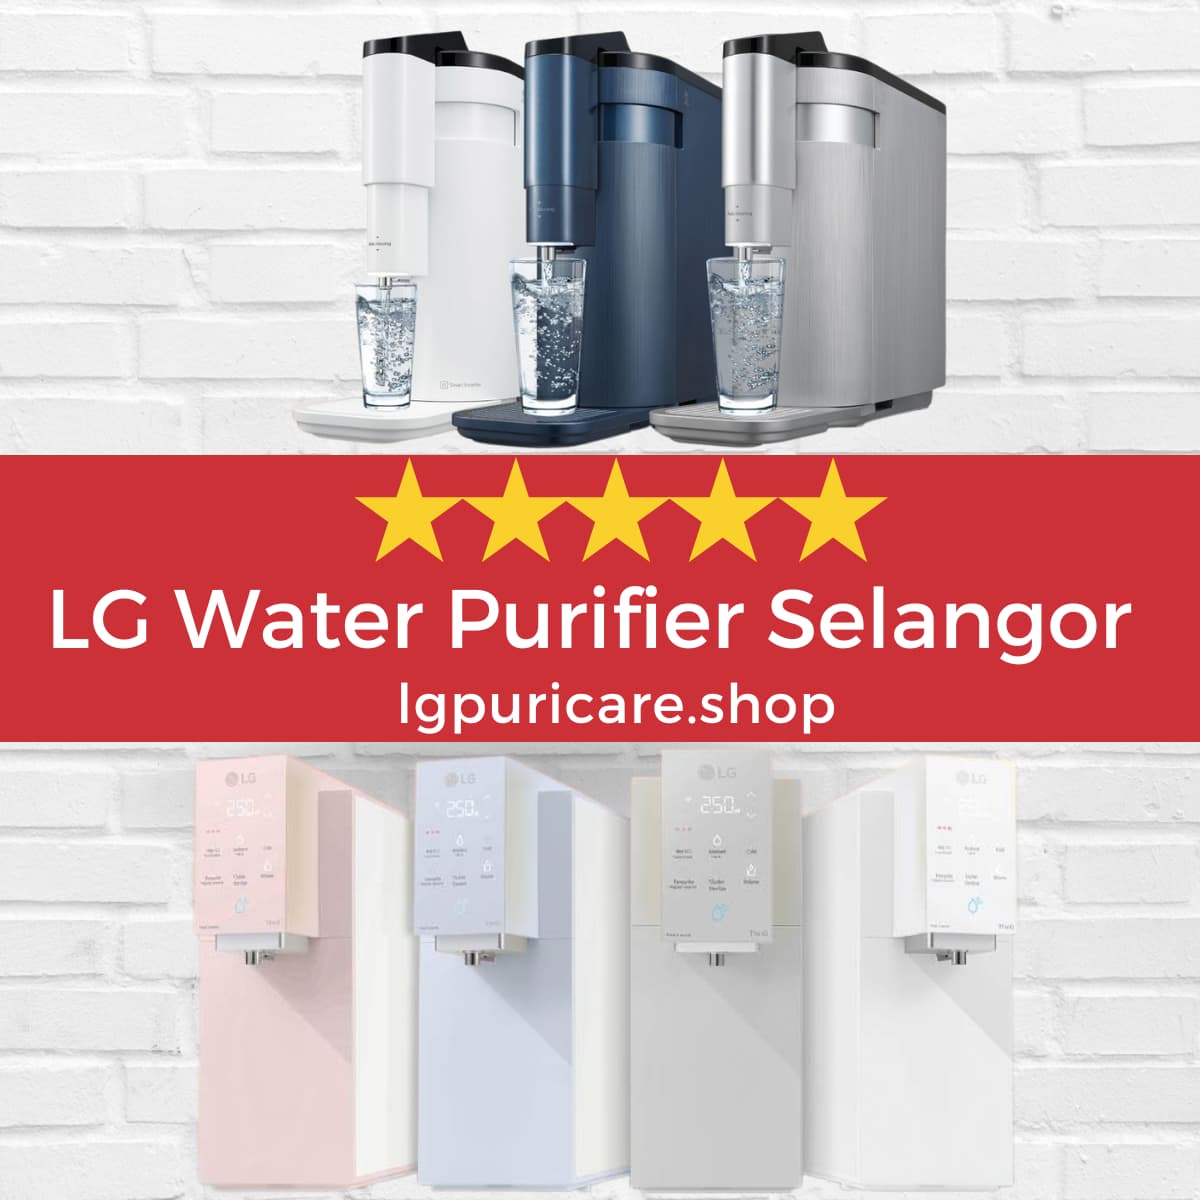 LG Water Purifier Selangor WD516AN & WD518AN